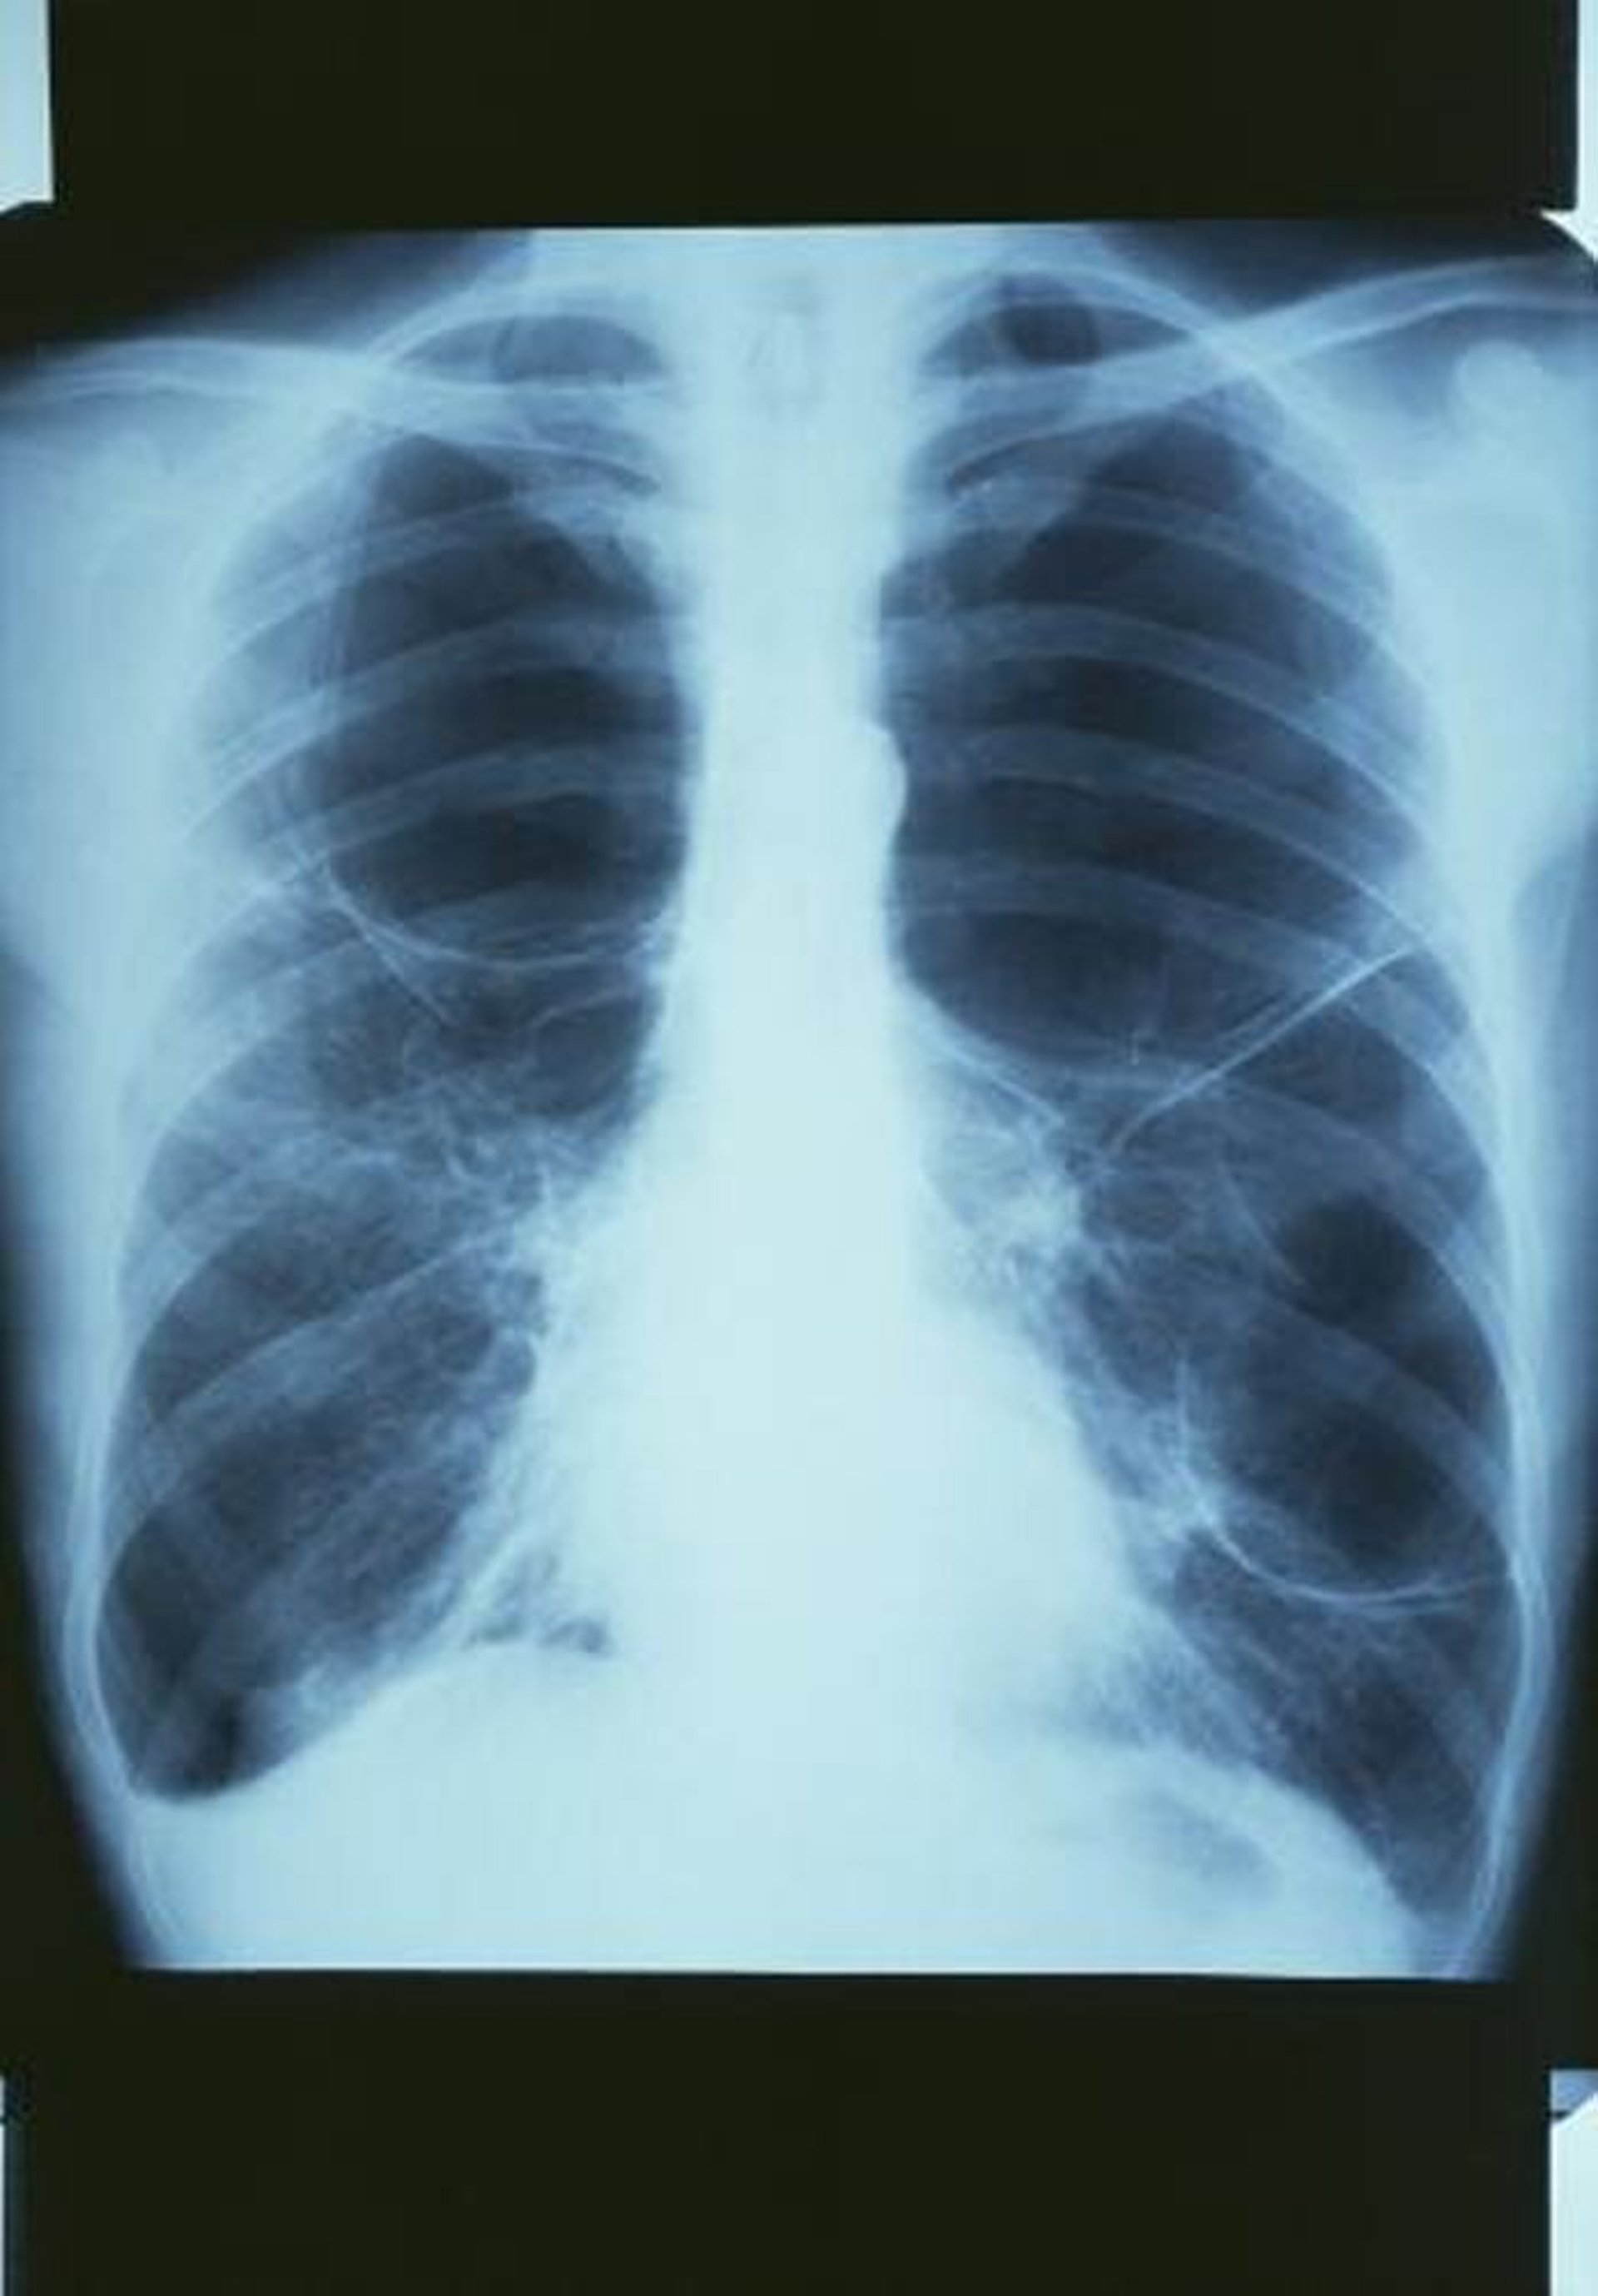 Enfermedad pulmonar obstructiva crónica con bullas